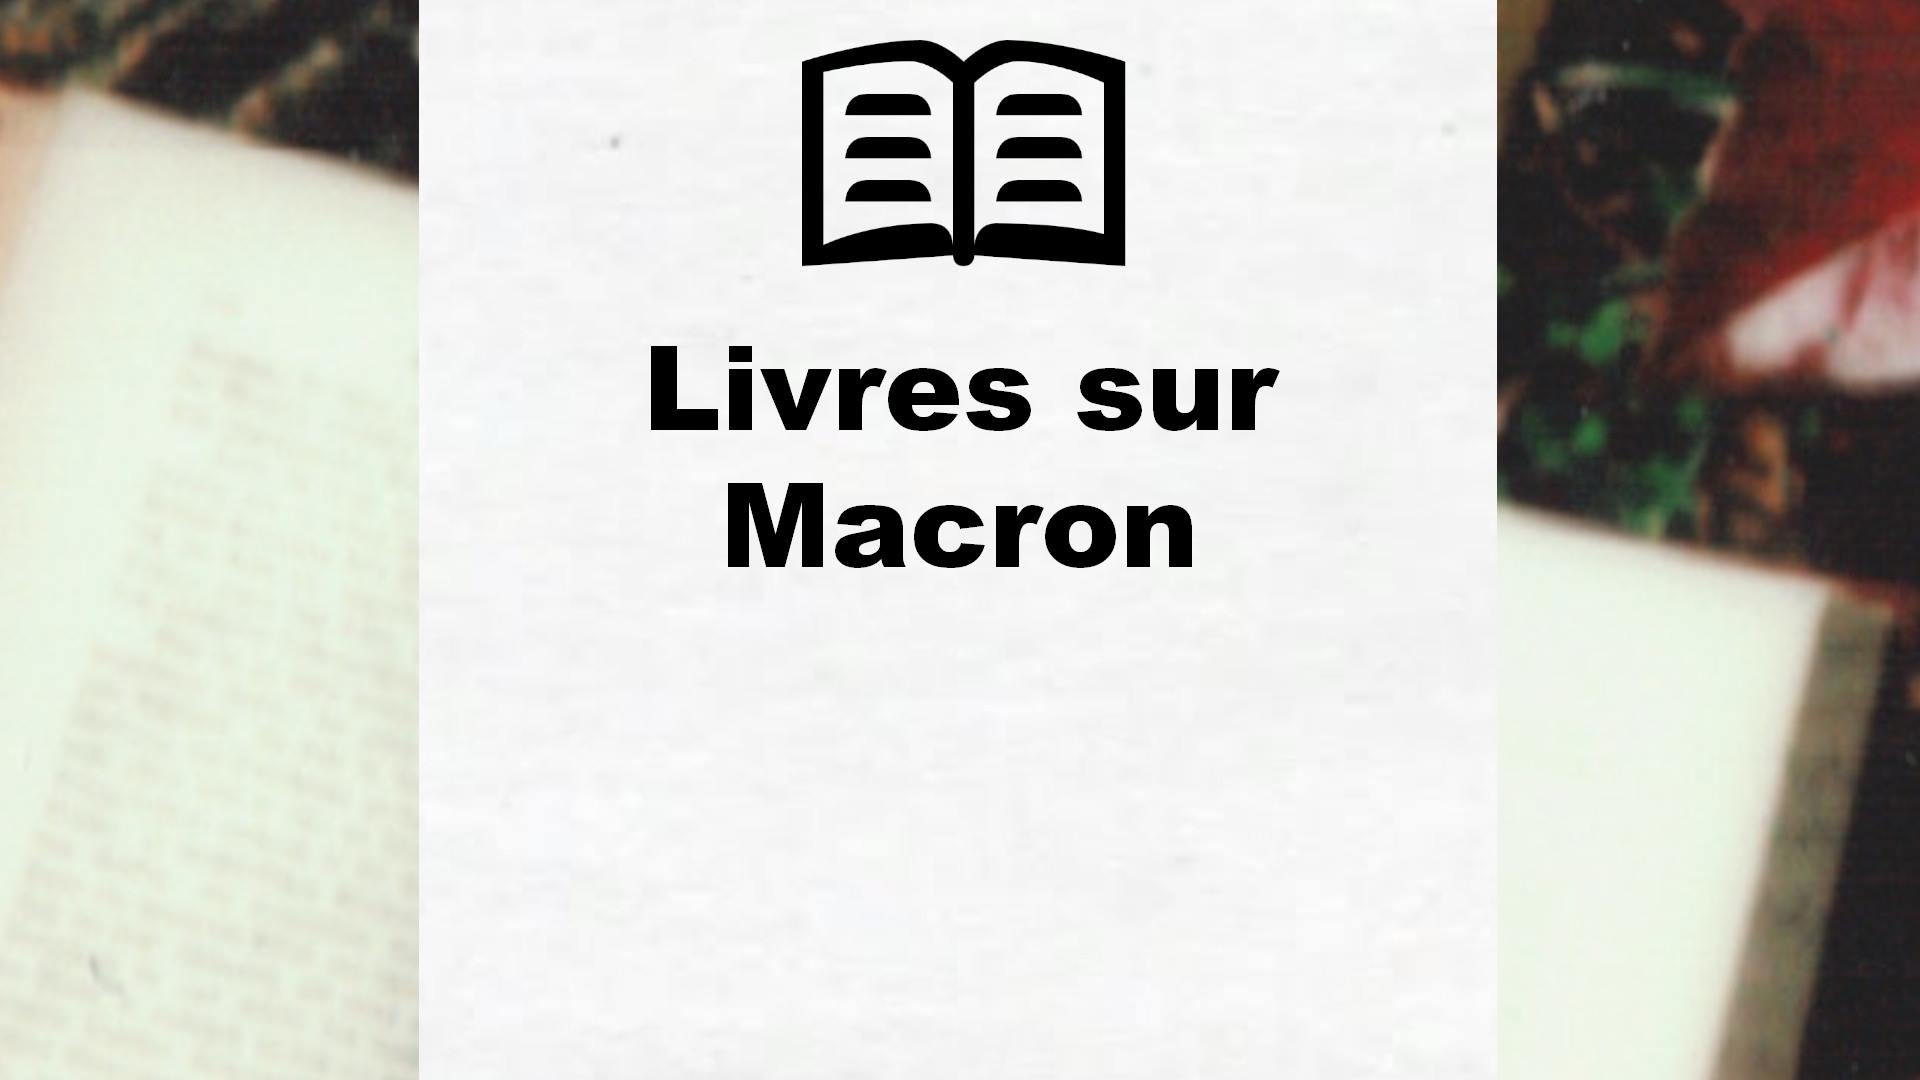 Livres sur Macron